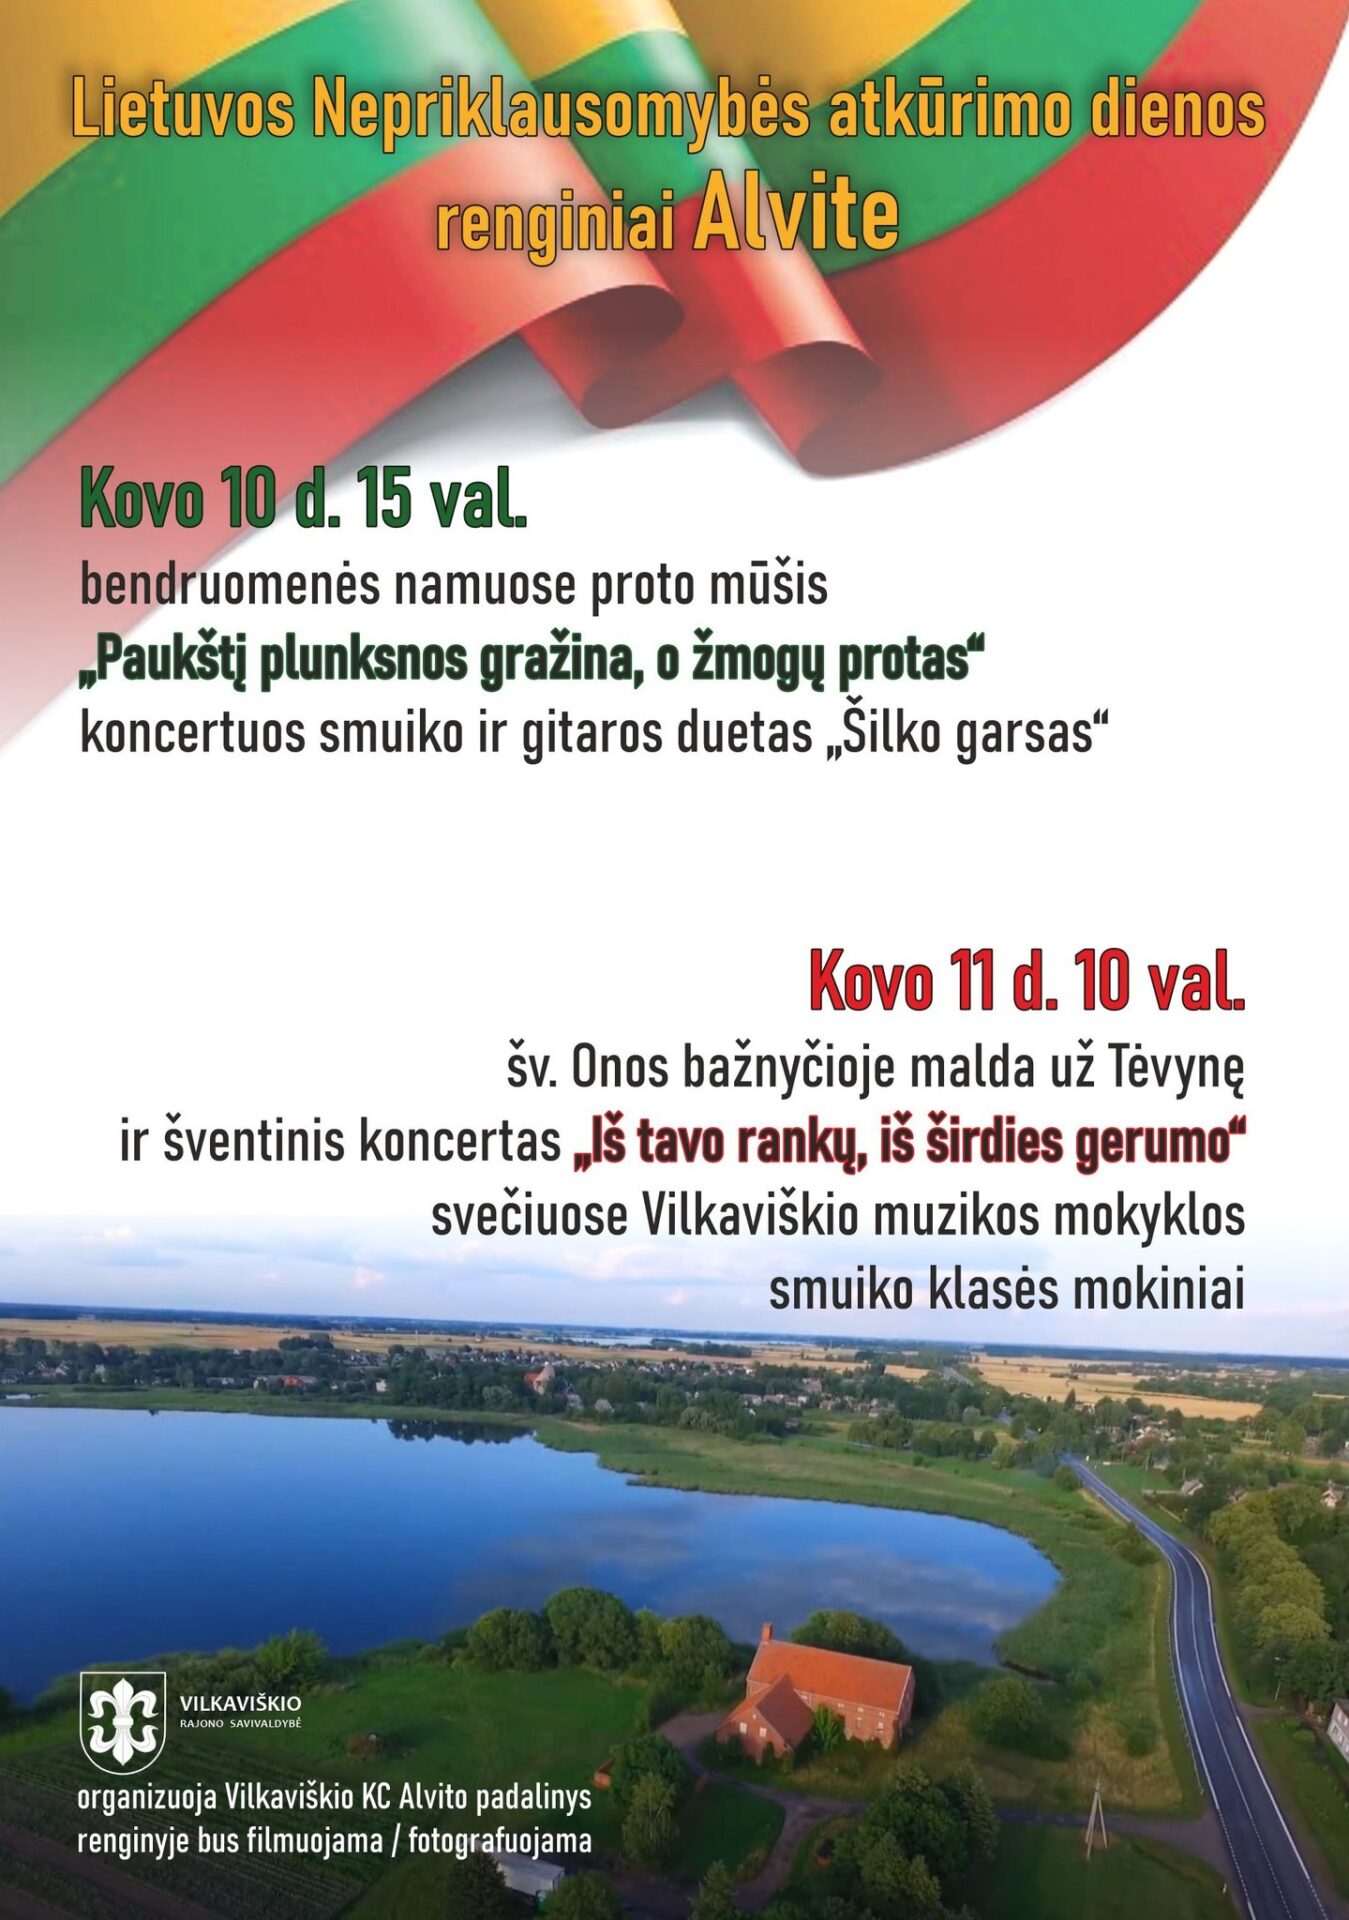 Lietuvos Nepriklausomybės atkūrimo diena Alvite